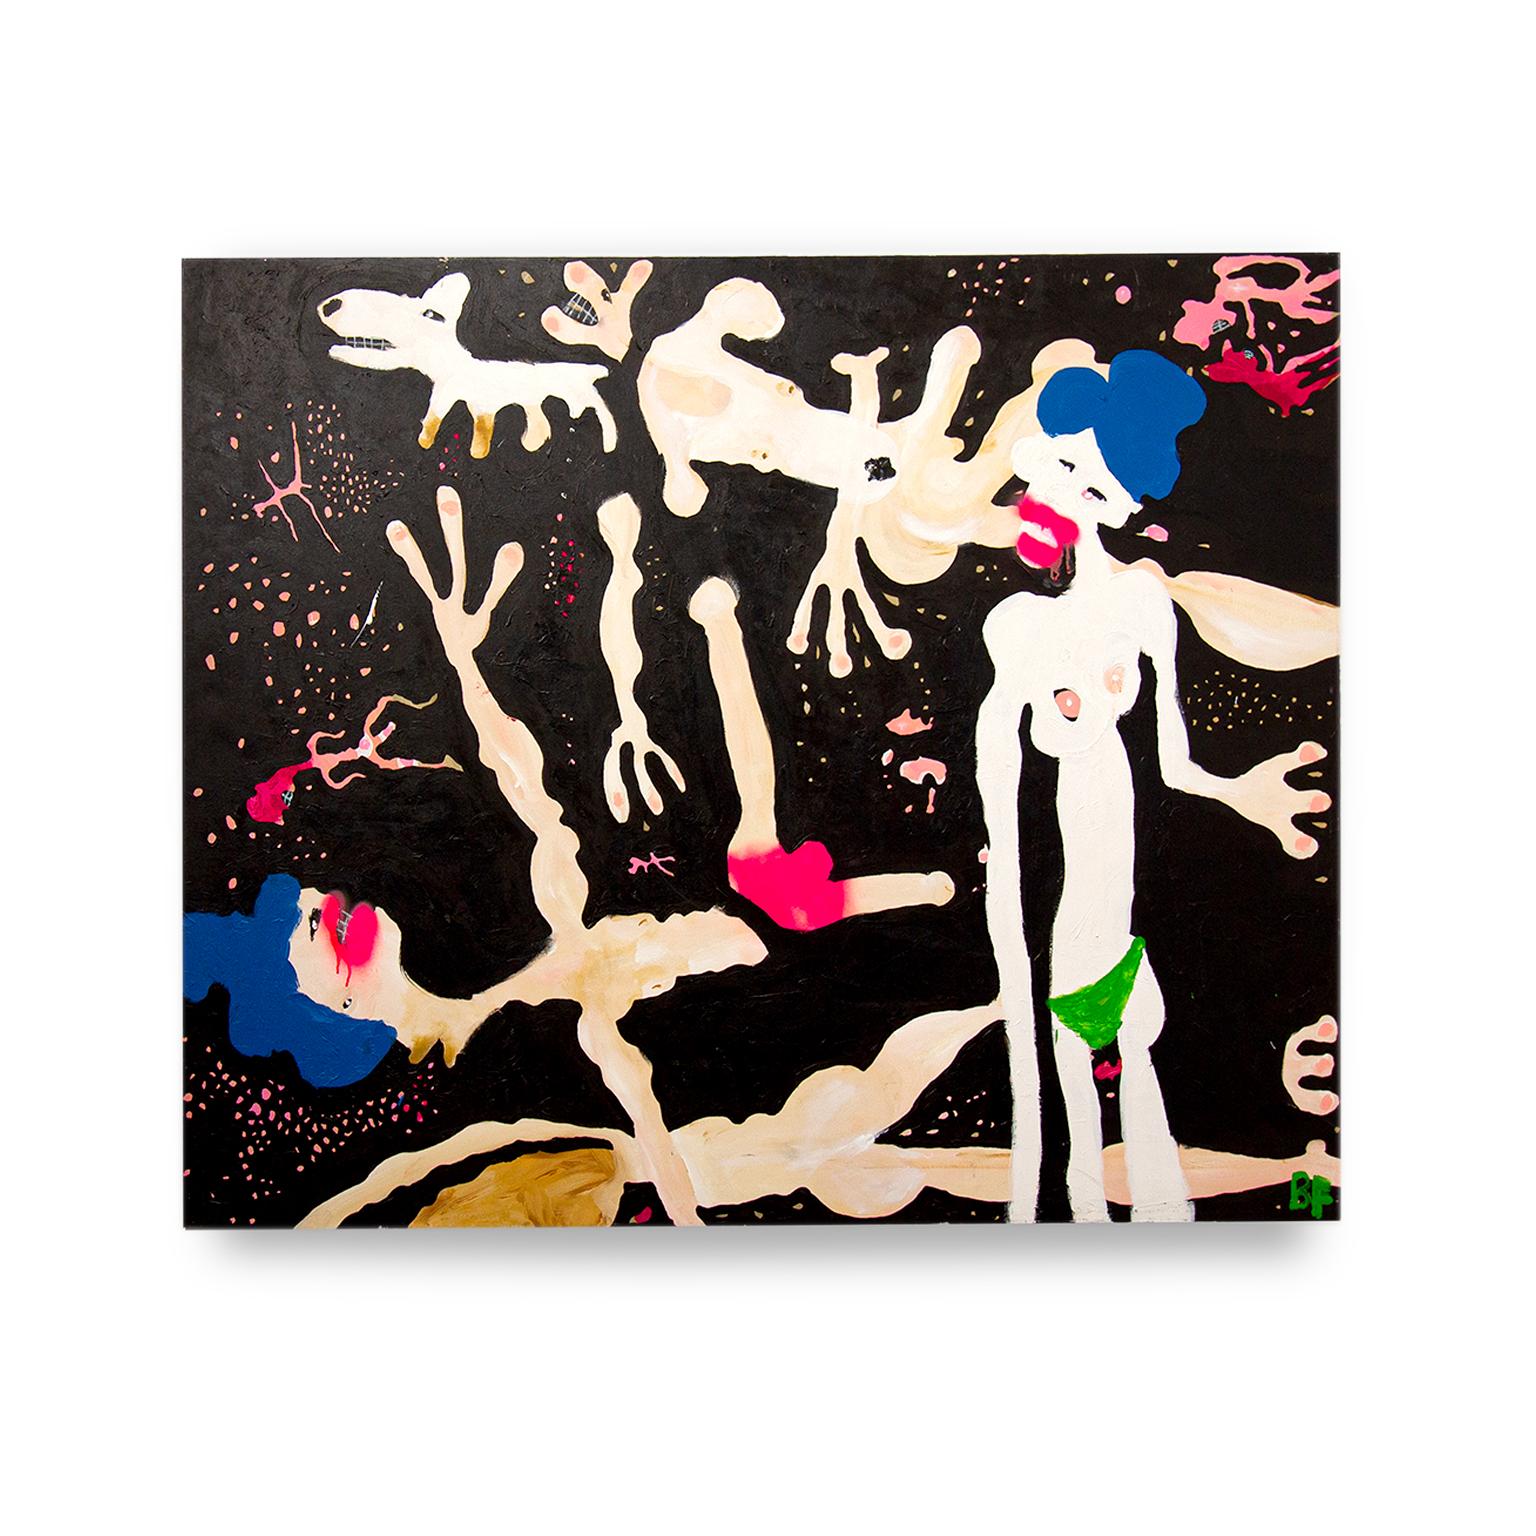 Bikini vert #3

Peinture figurative mixte sur toile de l'artiste Brad Fisher

60 × 72 × 1.5 in

L'expédition n'est pas incluse. Voir nos politiques d'expédition. Veuillez nous contacter pour obtenir un devis d'expédition et des options de